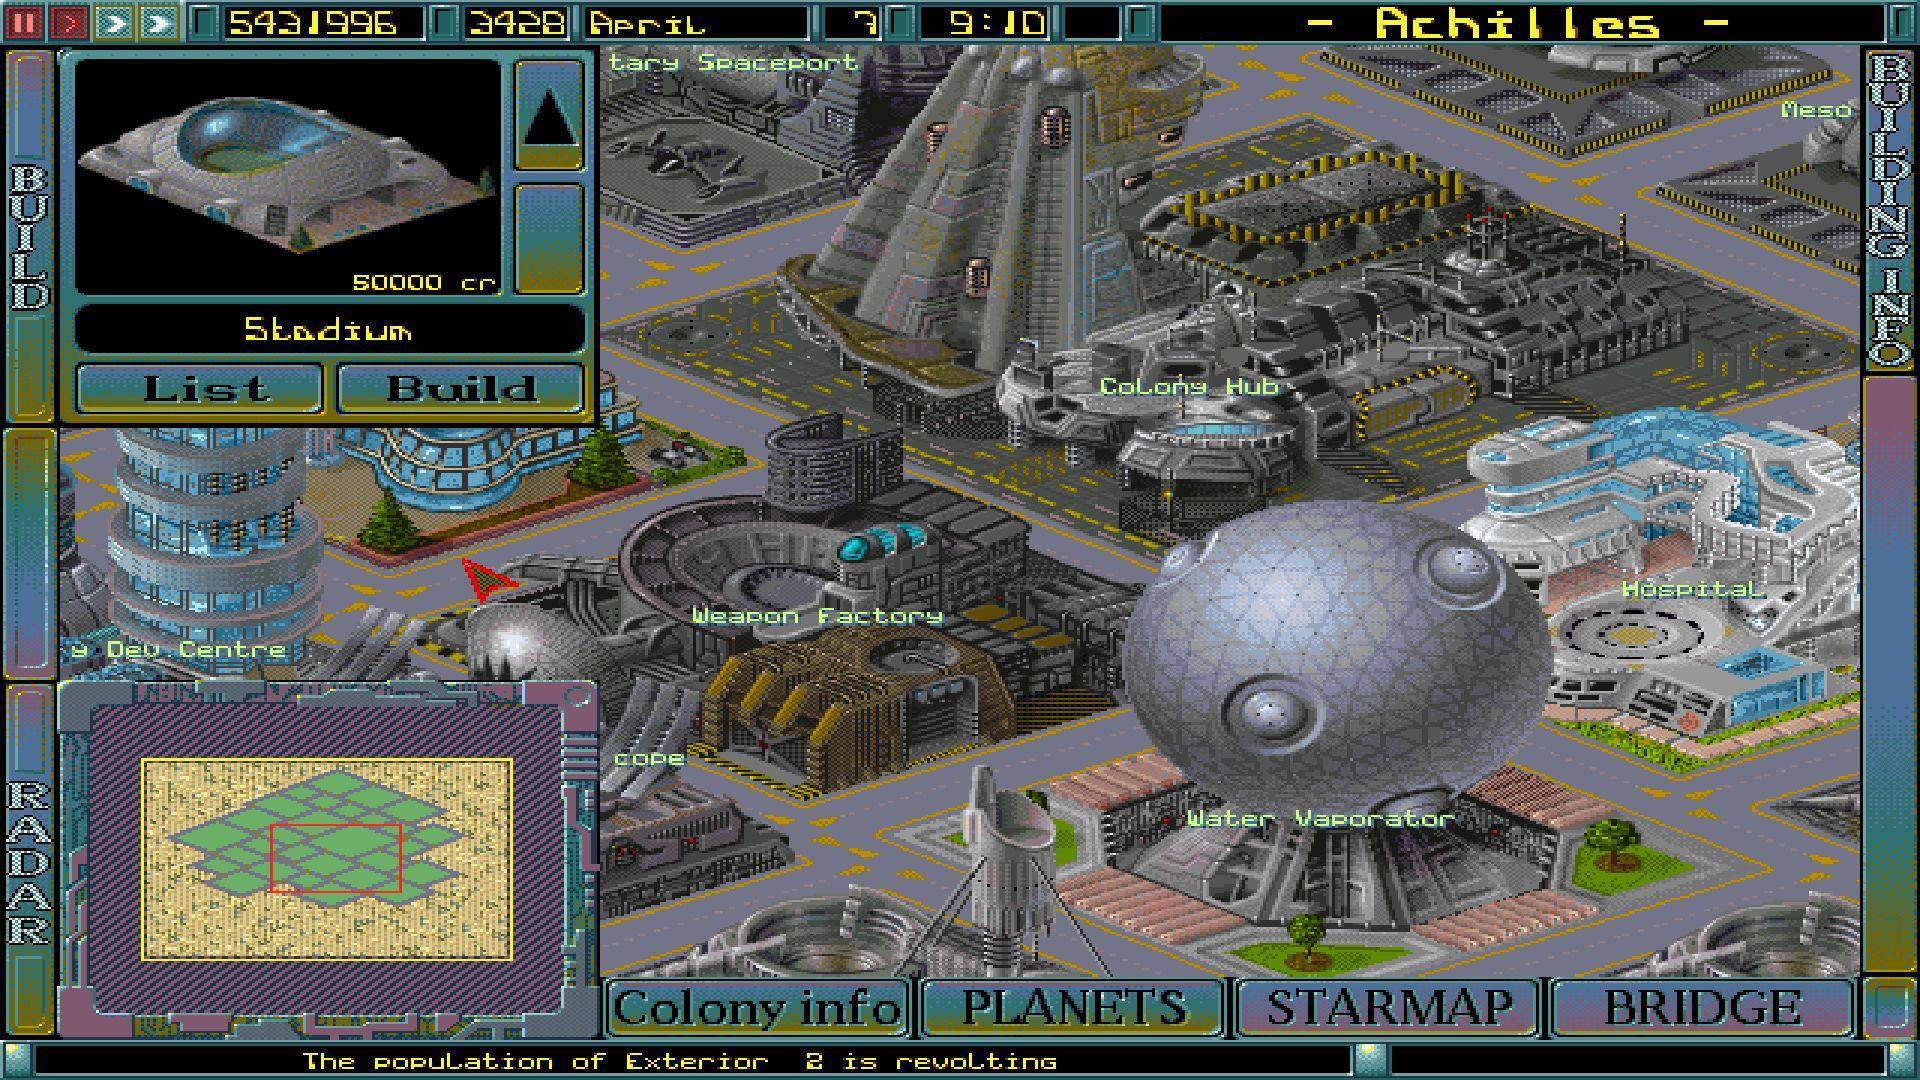 Imperium: Galactic War ist ein Science-Fiction-Strategietitel von Vavel Games, der Spielern die Möglichkeit bietet, an galaktischen Schlachten teilzunehmen und Imperien aufzubauen.